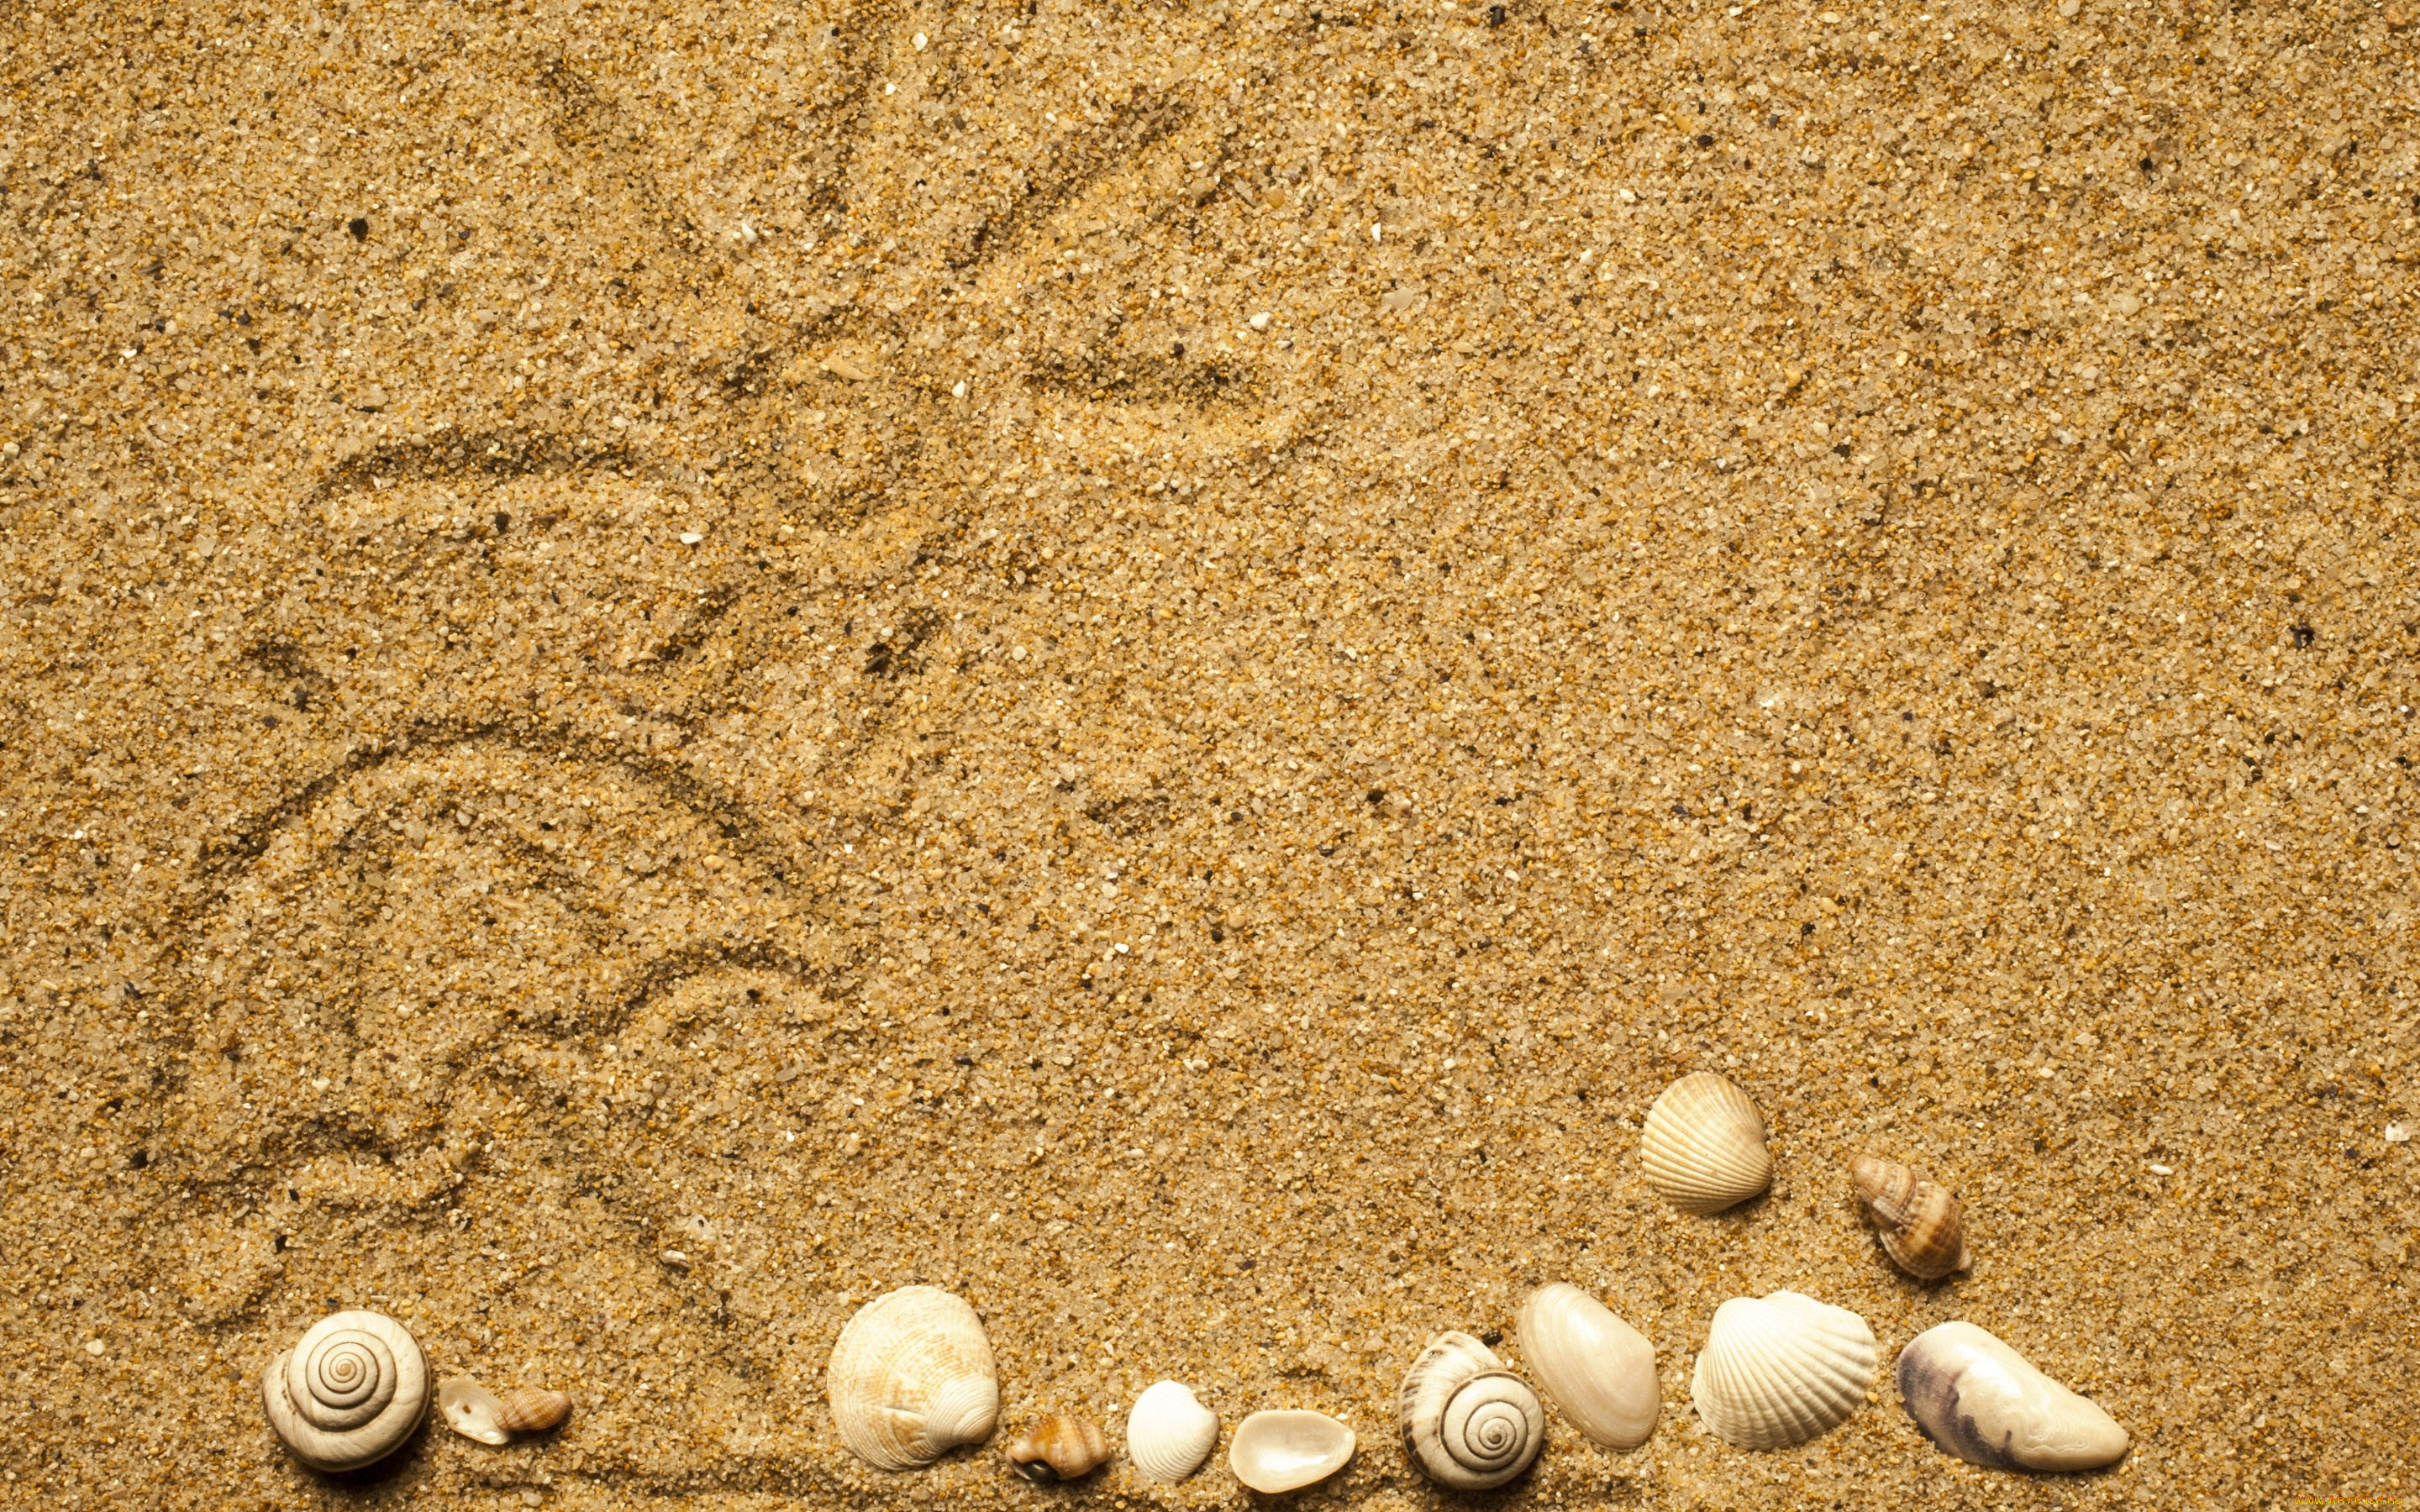 разное, ракушки, , кораллы, , декоративные, и, spa-камни, texture, sand, песок, seashells, marine, beach